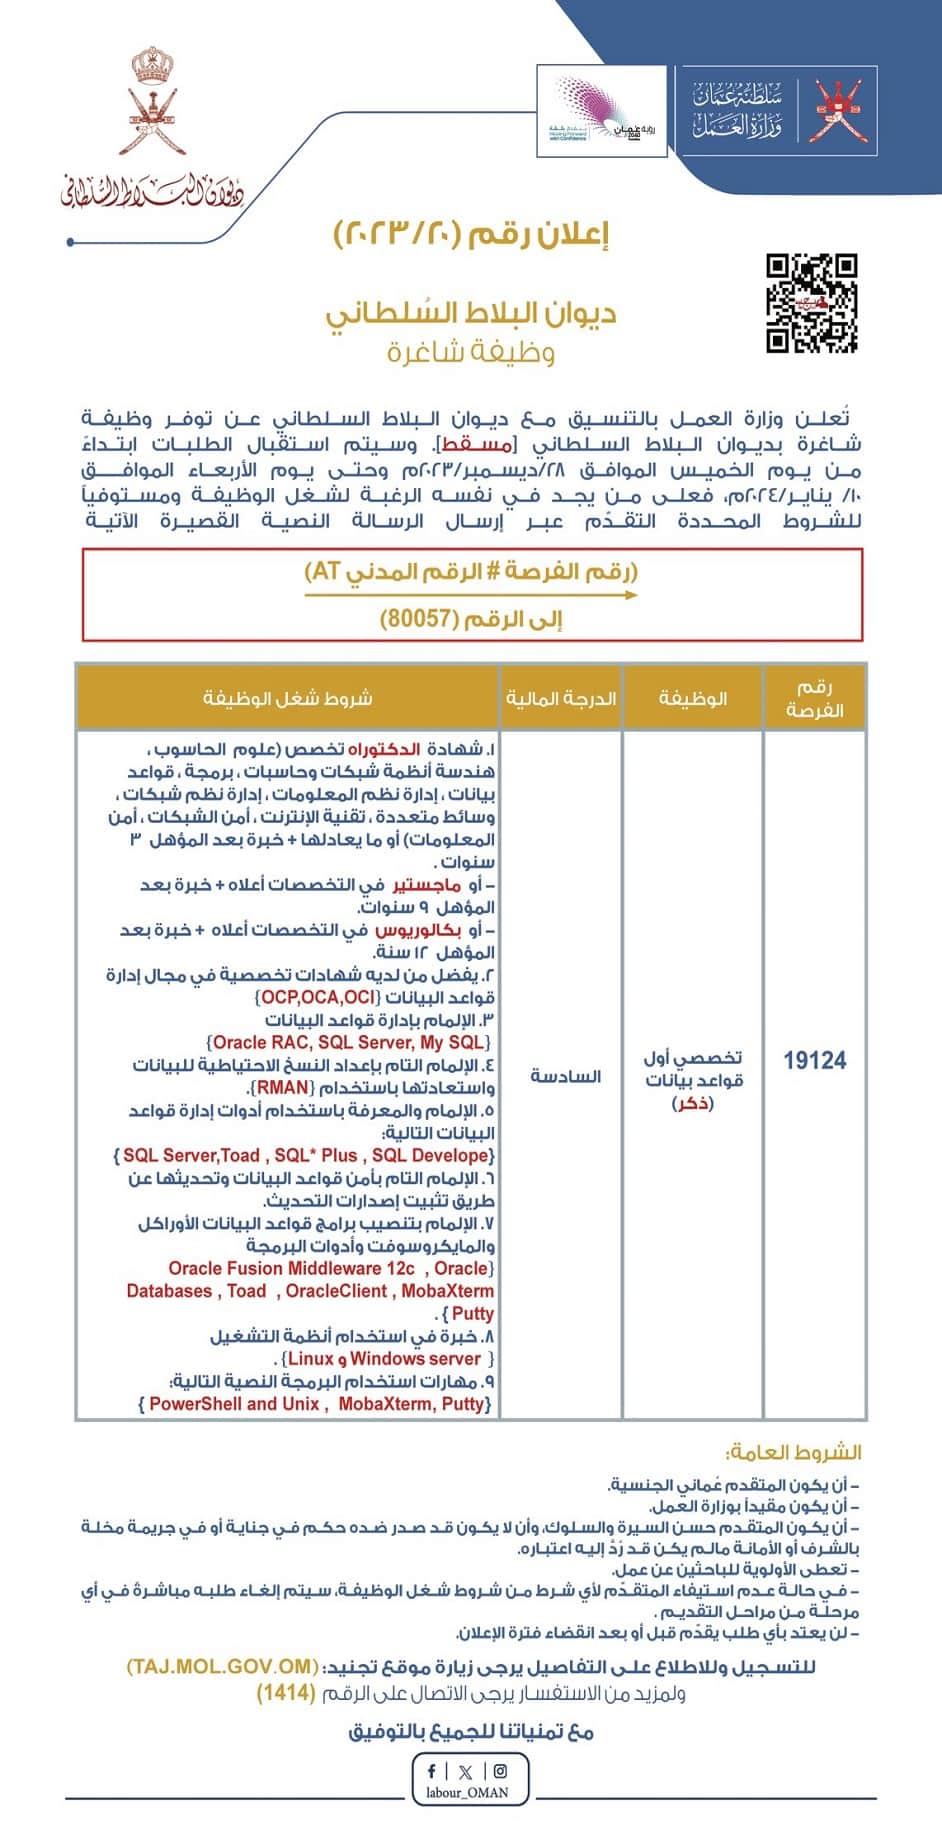 وظائف ديوان البلاط السلطاني 2024 في سلطنة عمان برواتب ومزايا عالية .. انقر هنا للتقديم